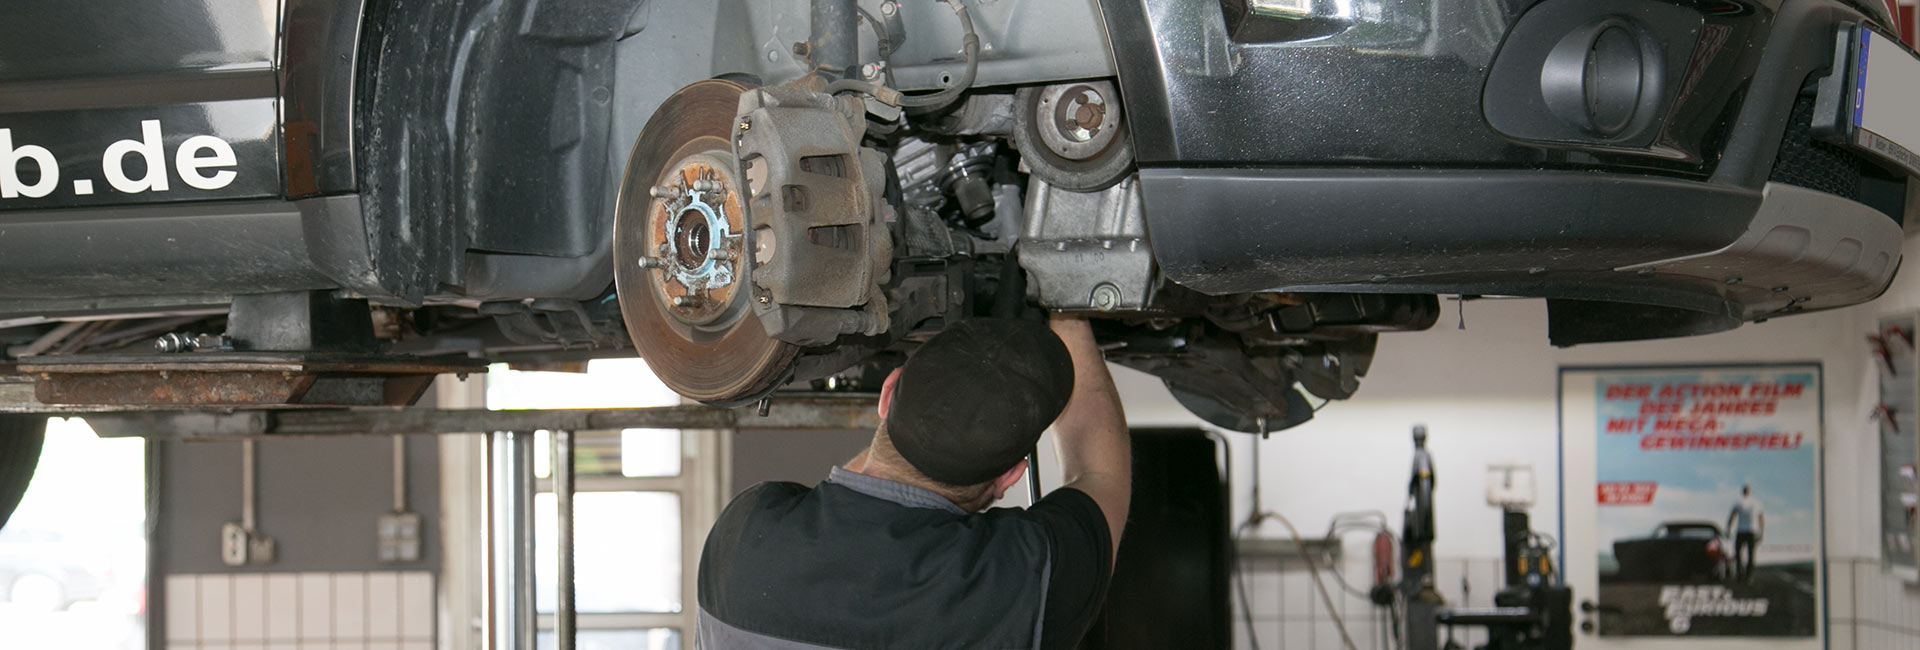 Reparatur an Autos, Motorräder und LKW's